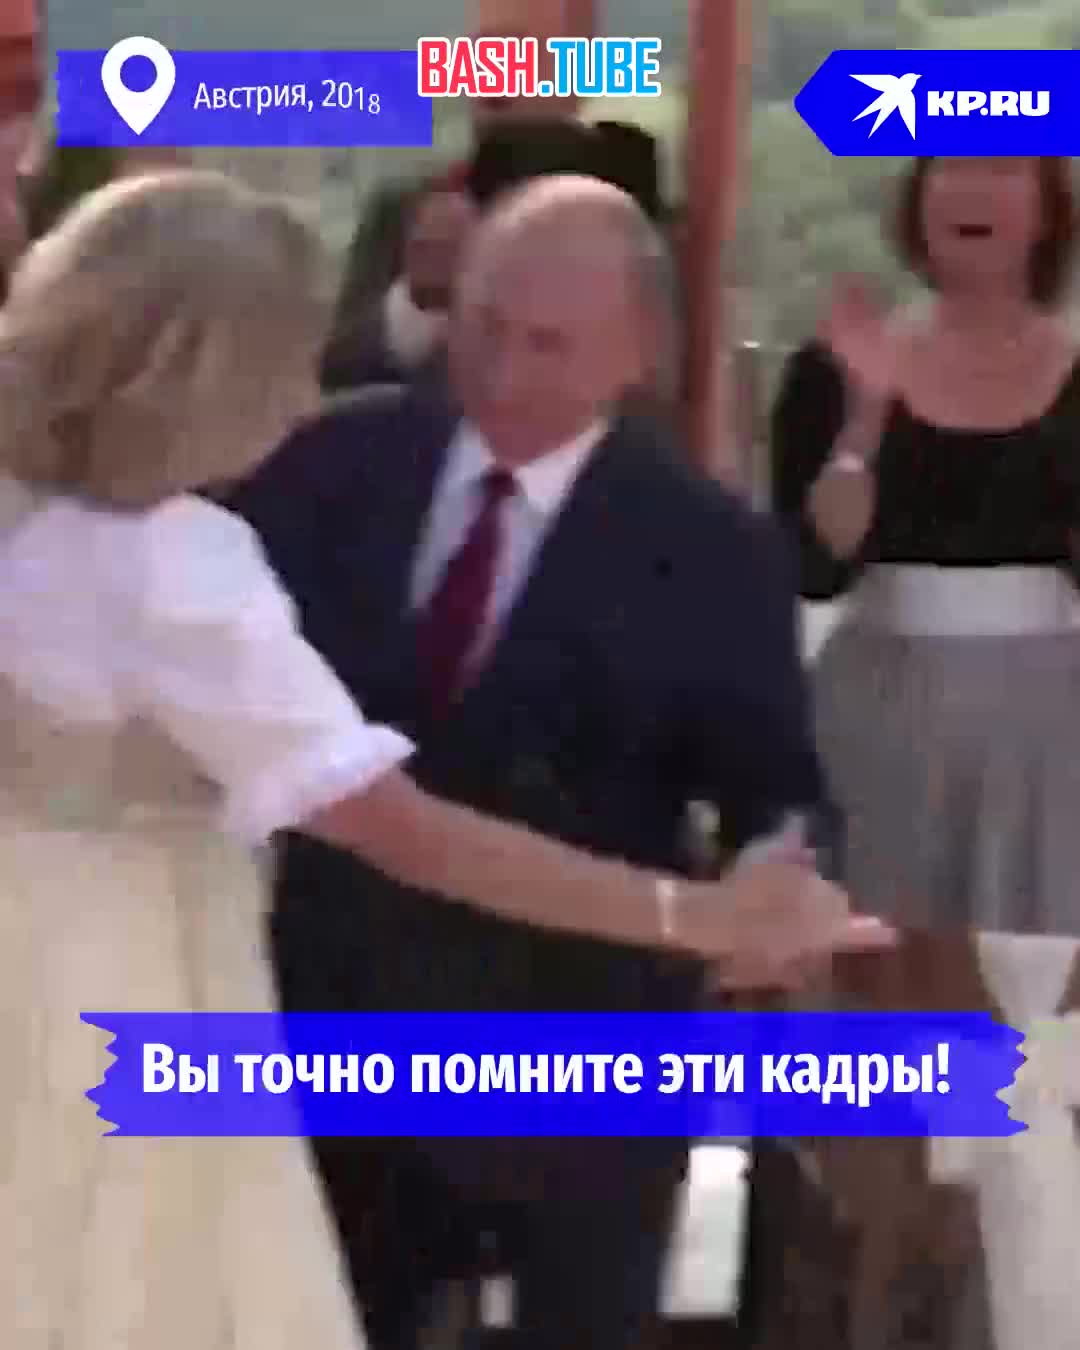  Судьбоносный танец с Путиным